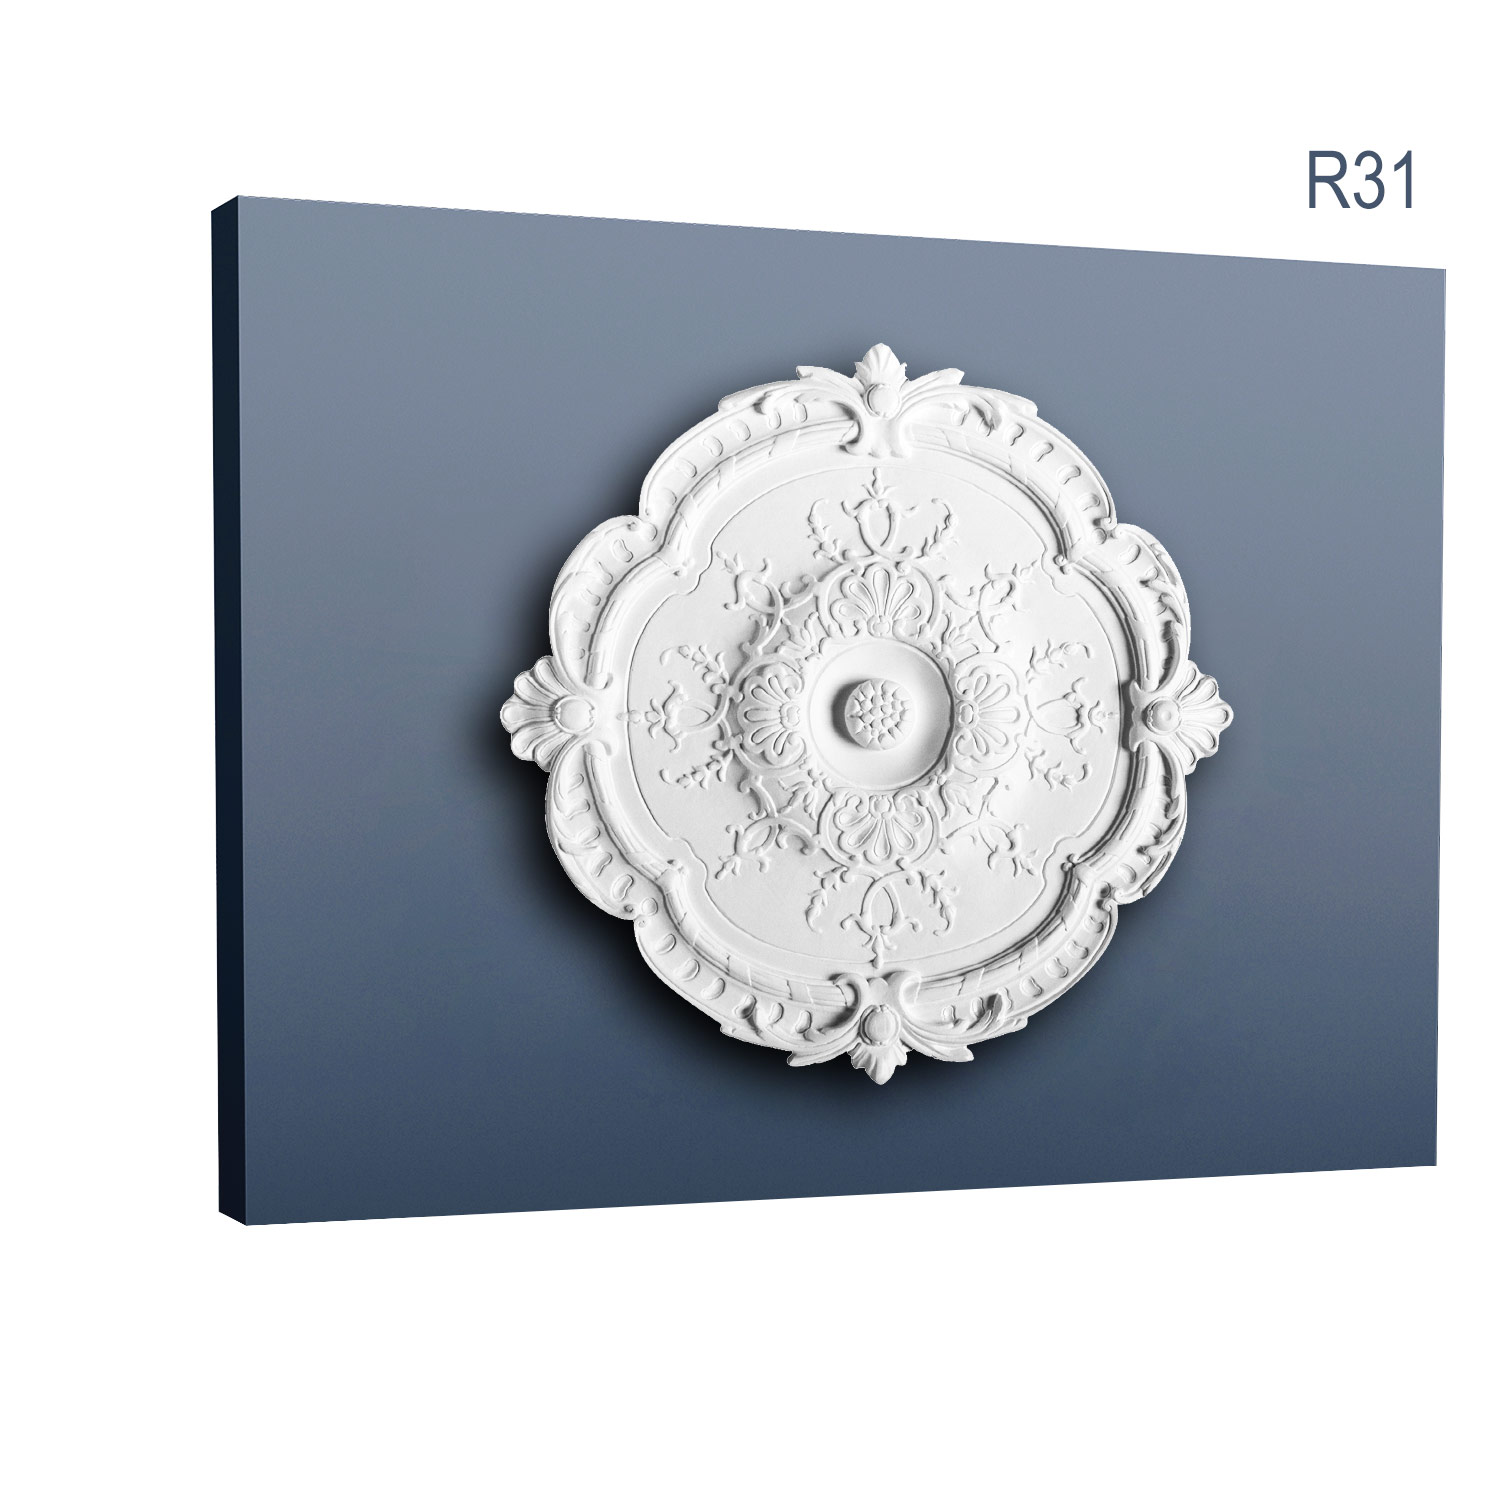 Rozeta Luxxus R31, Dimensiuni: diam. 38,5 cm (H: 2,7 cm), Orac Decor Orac Decor